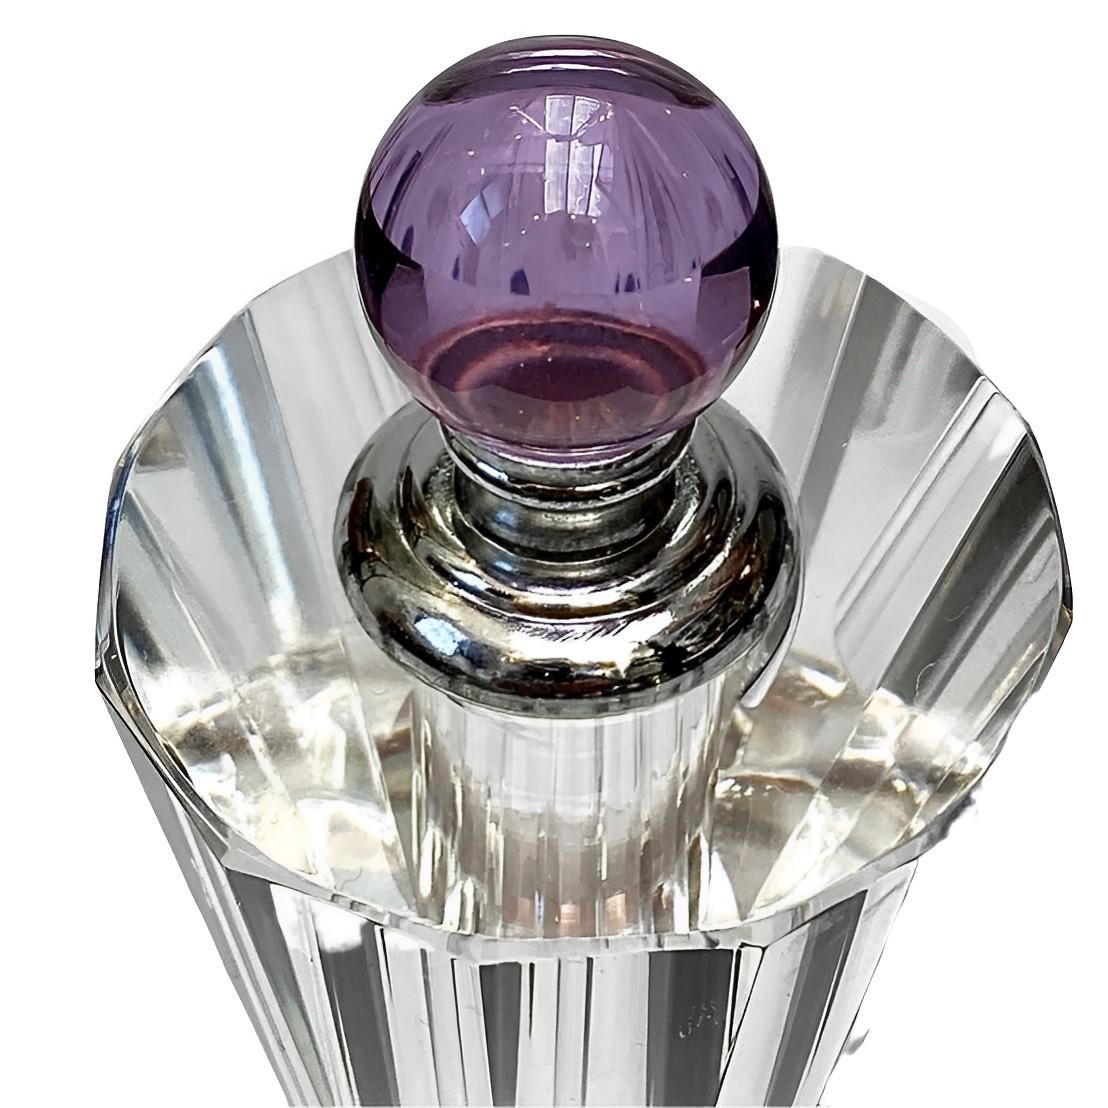 
Fabuleux grand flacon de parfum en cristal de plomb avec un bouchon en argent et en lilas, et une base en forme de boule avec des bulles à l'intérieur. Hauteur 17 cm / 6.6 inches et diamètre au sommet 5.8 cm / 2.28 inches. Le flacon de parfum est